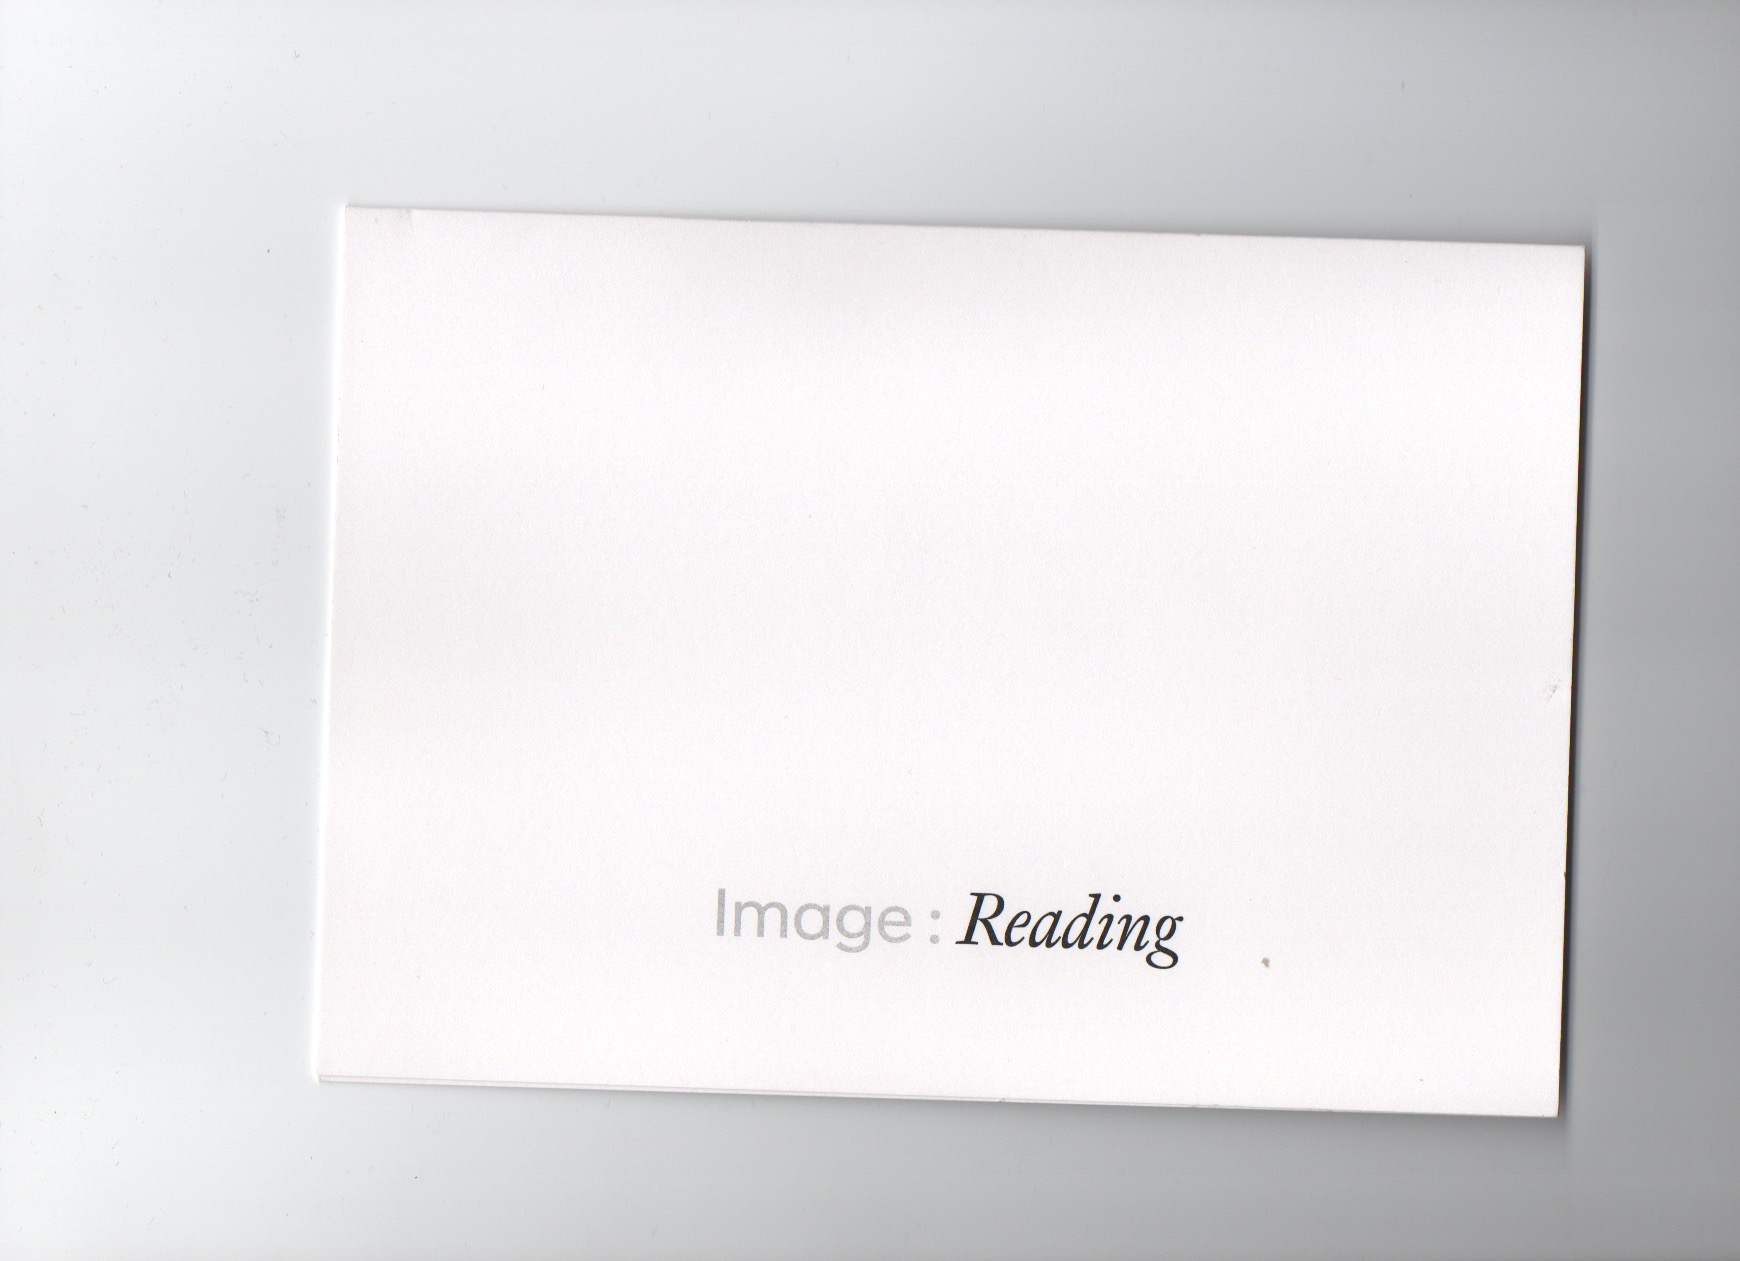 forde - flyer - Image: Reading